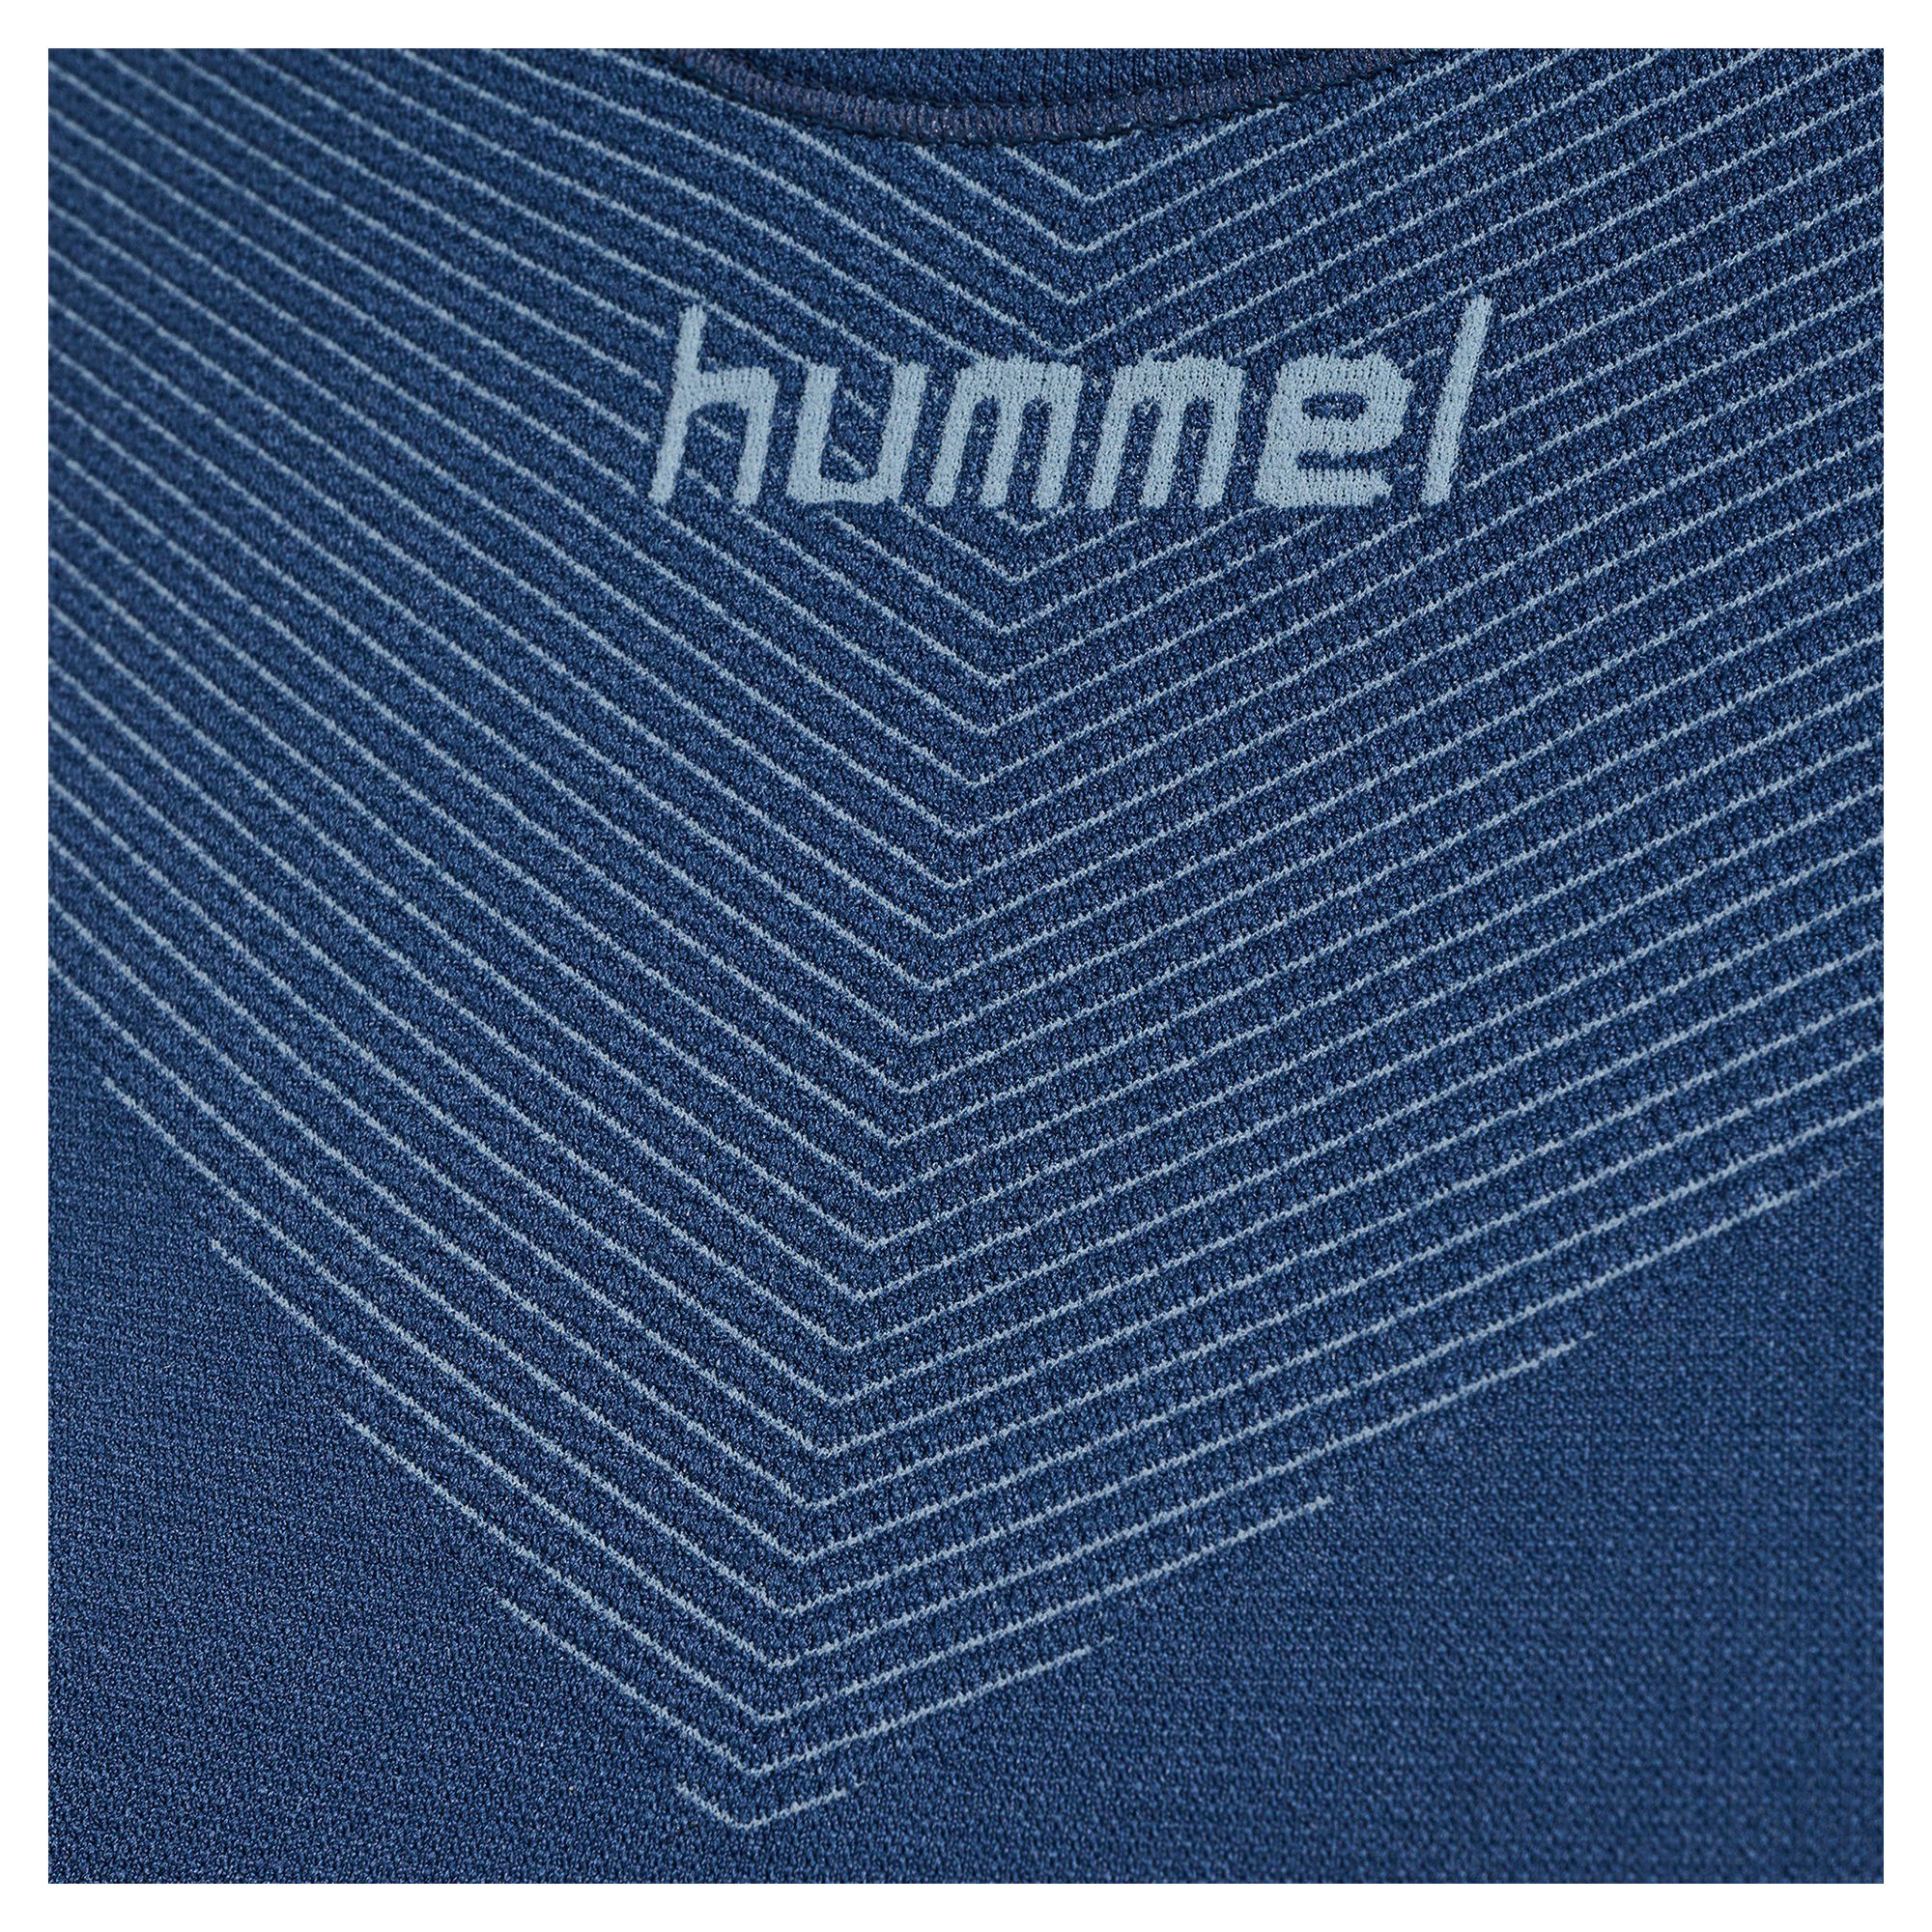 Hummel First Seamless Shortsleeve Jersey Damen